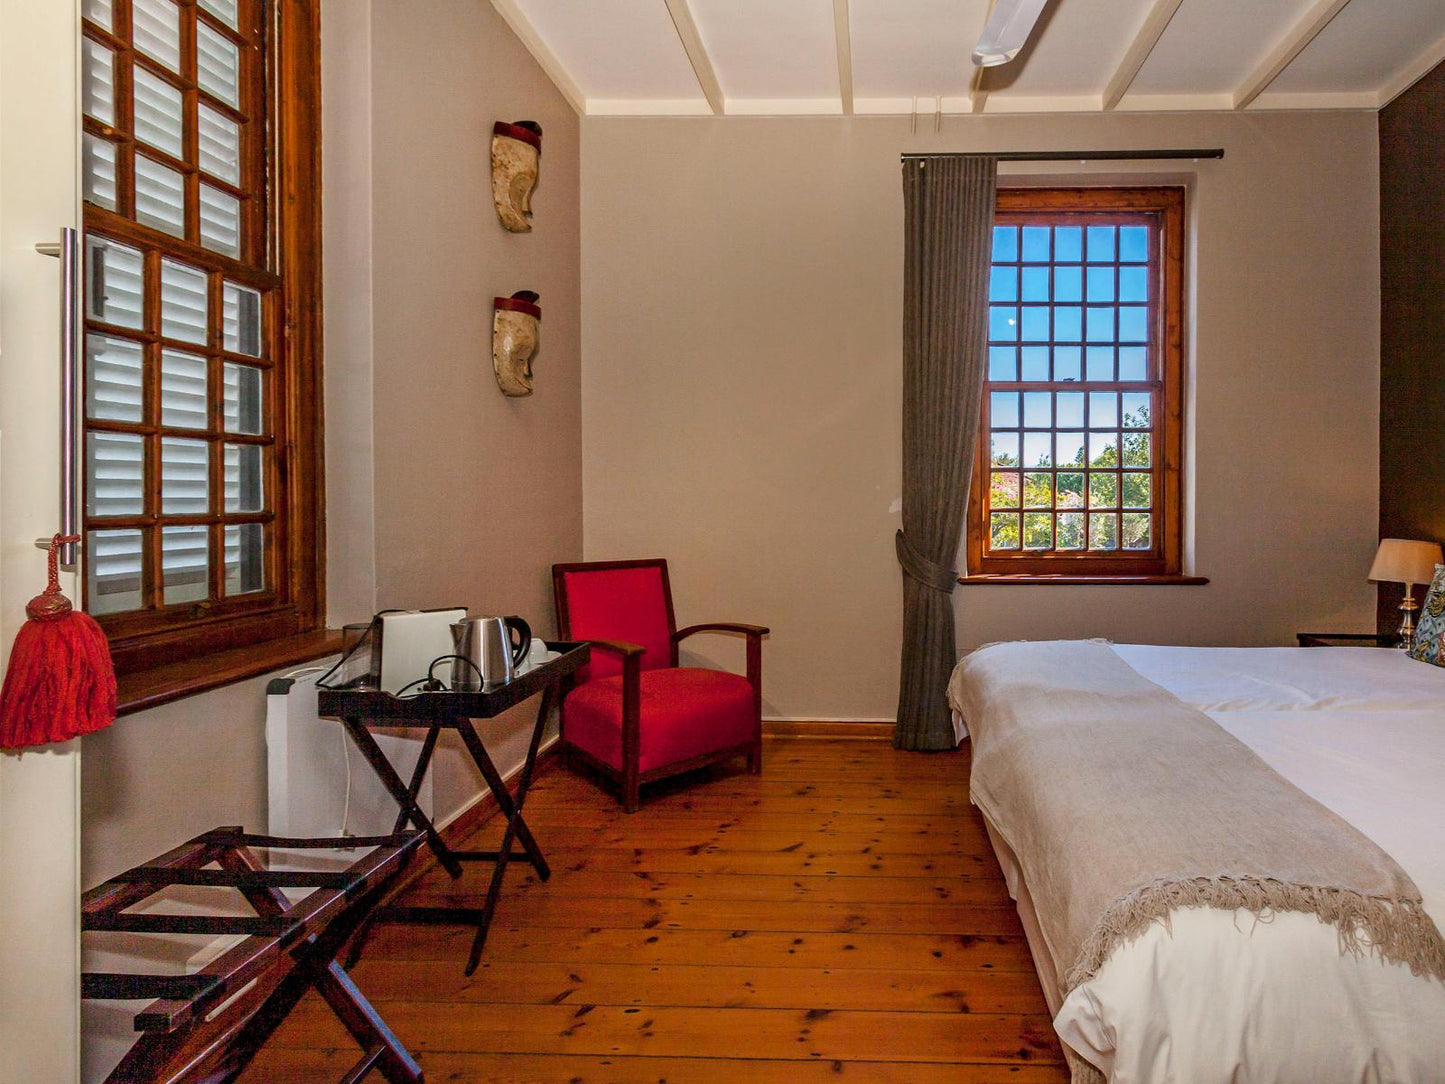 Standard Room @ Stellendal Guest House